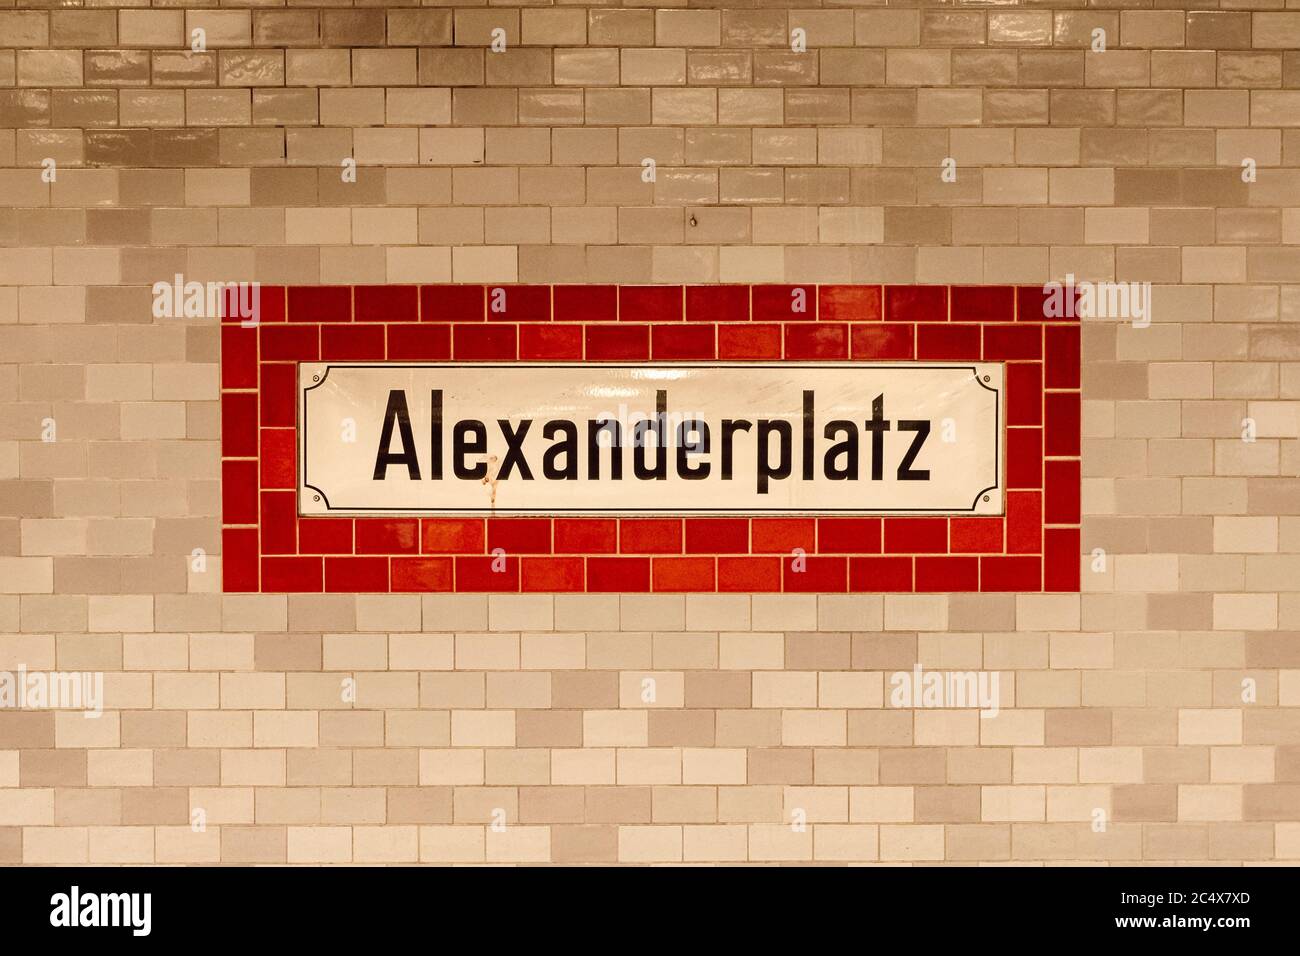 Keramikfliesen Wand mit Alexanderplatz alten Schild an U-Bahn U-Bahn-Station Alexanderplatz in Berlin, Deutschland. Stockfoto